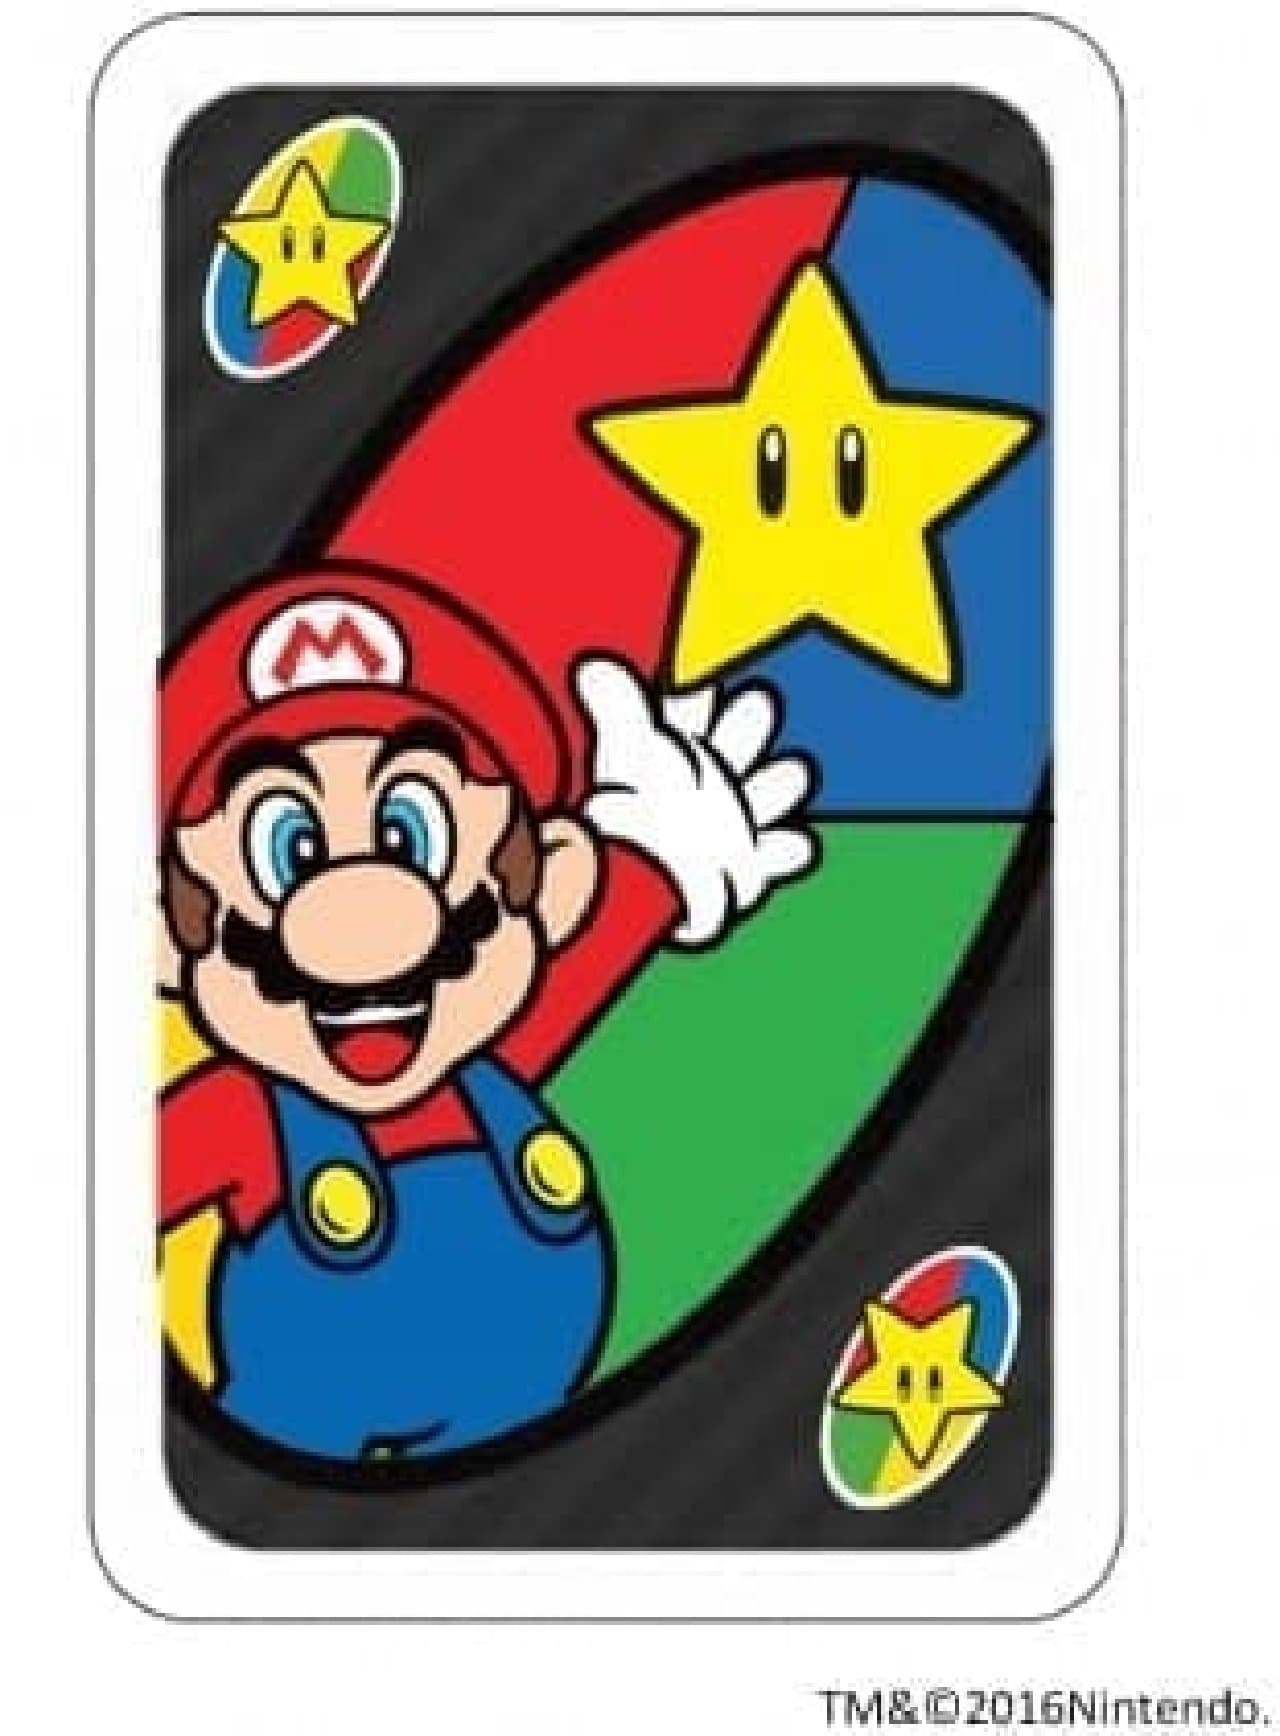 UNO "Uno Super Mario"